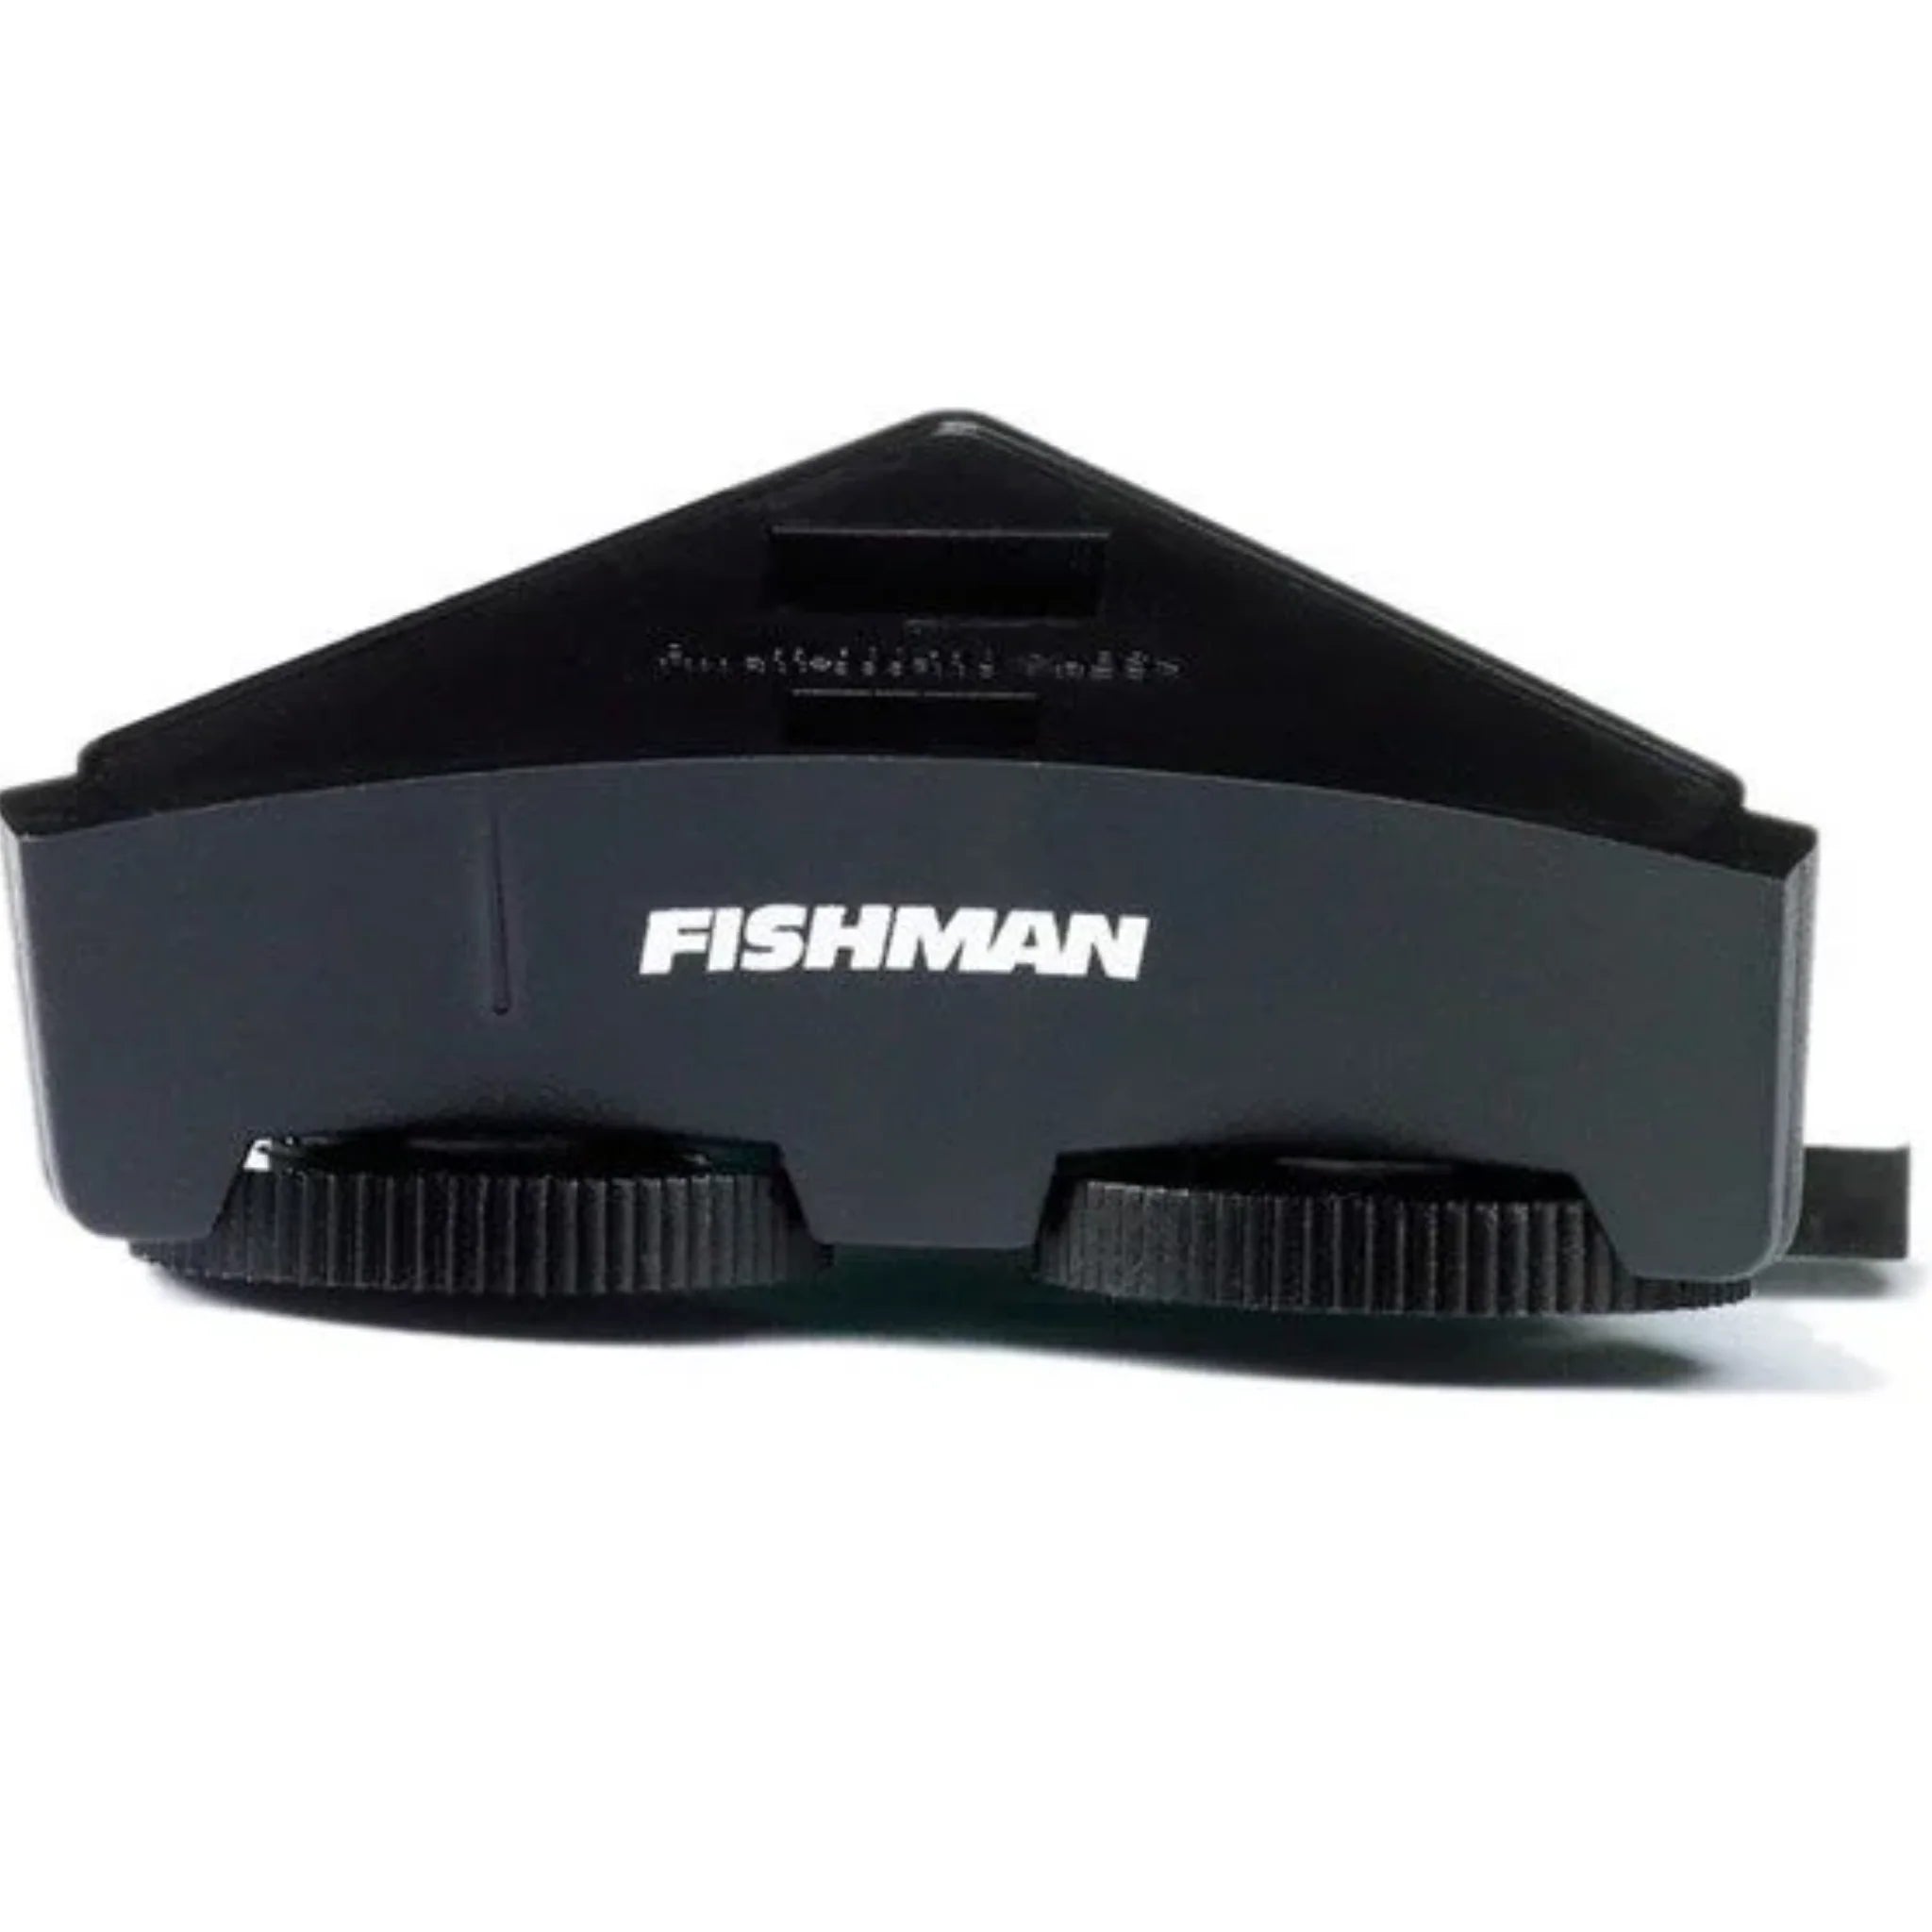 Fishman® Sonitone EQ System